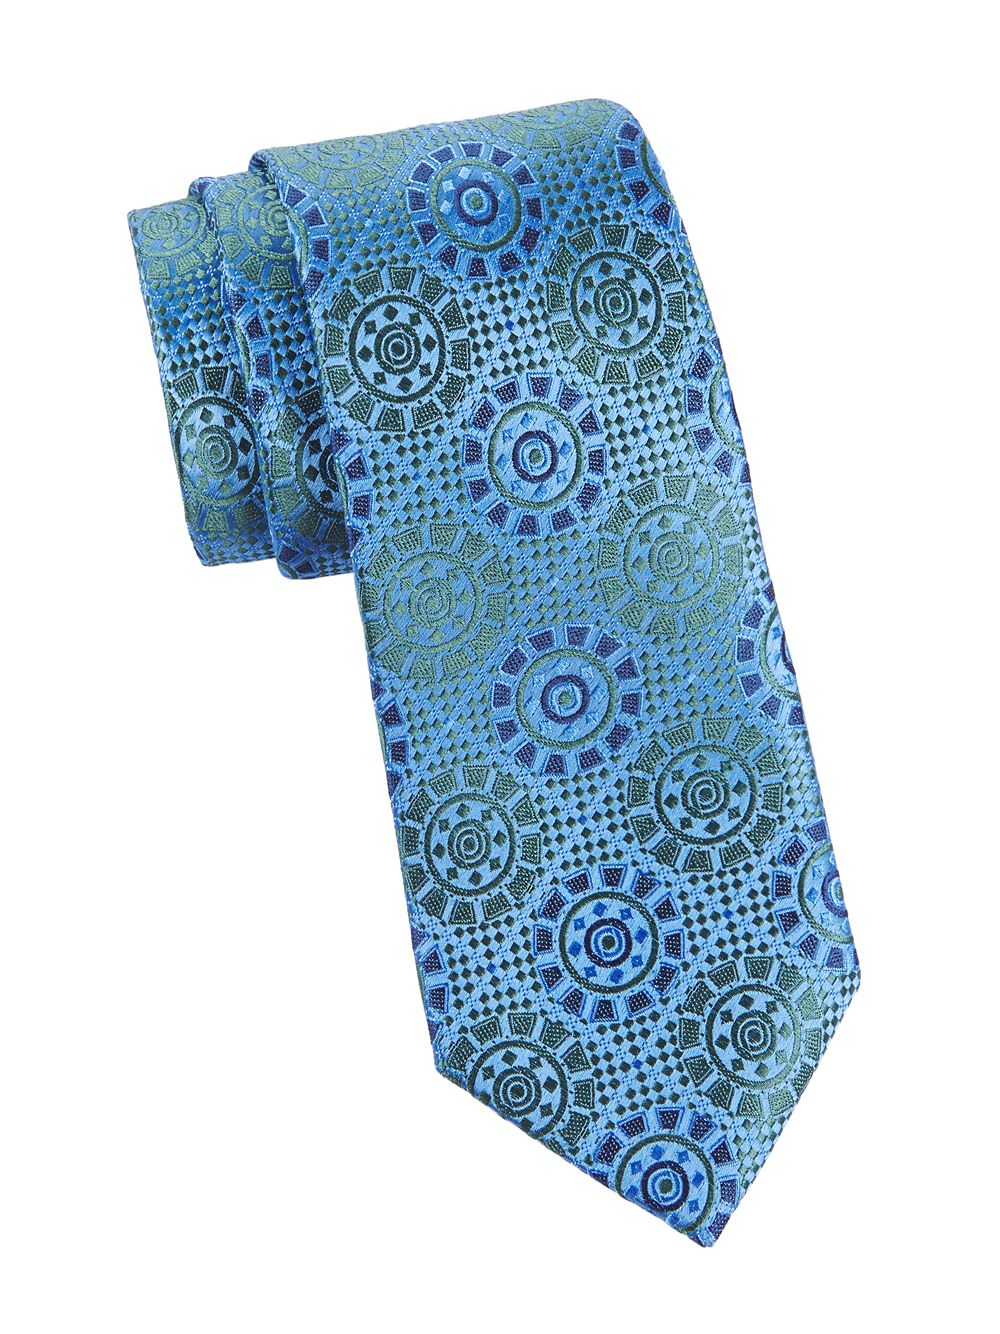 Шелковый галстук с медальоном Charvet, синий классический шелковый галстук charvet синий